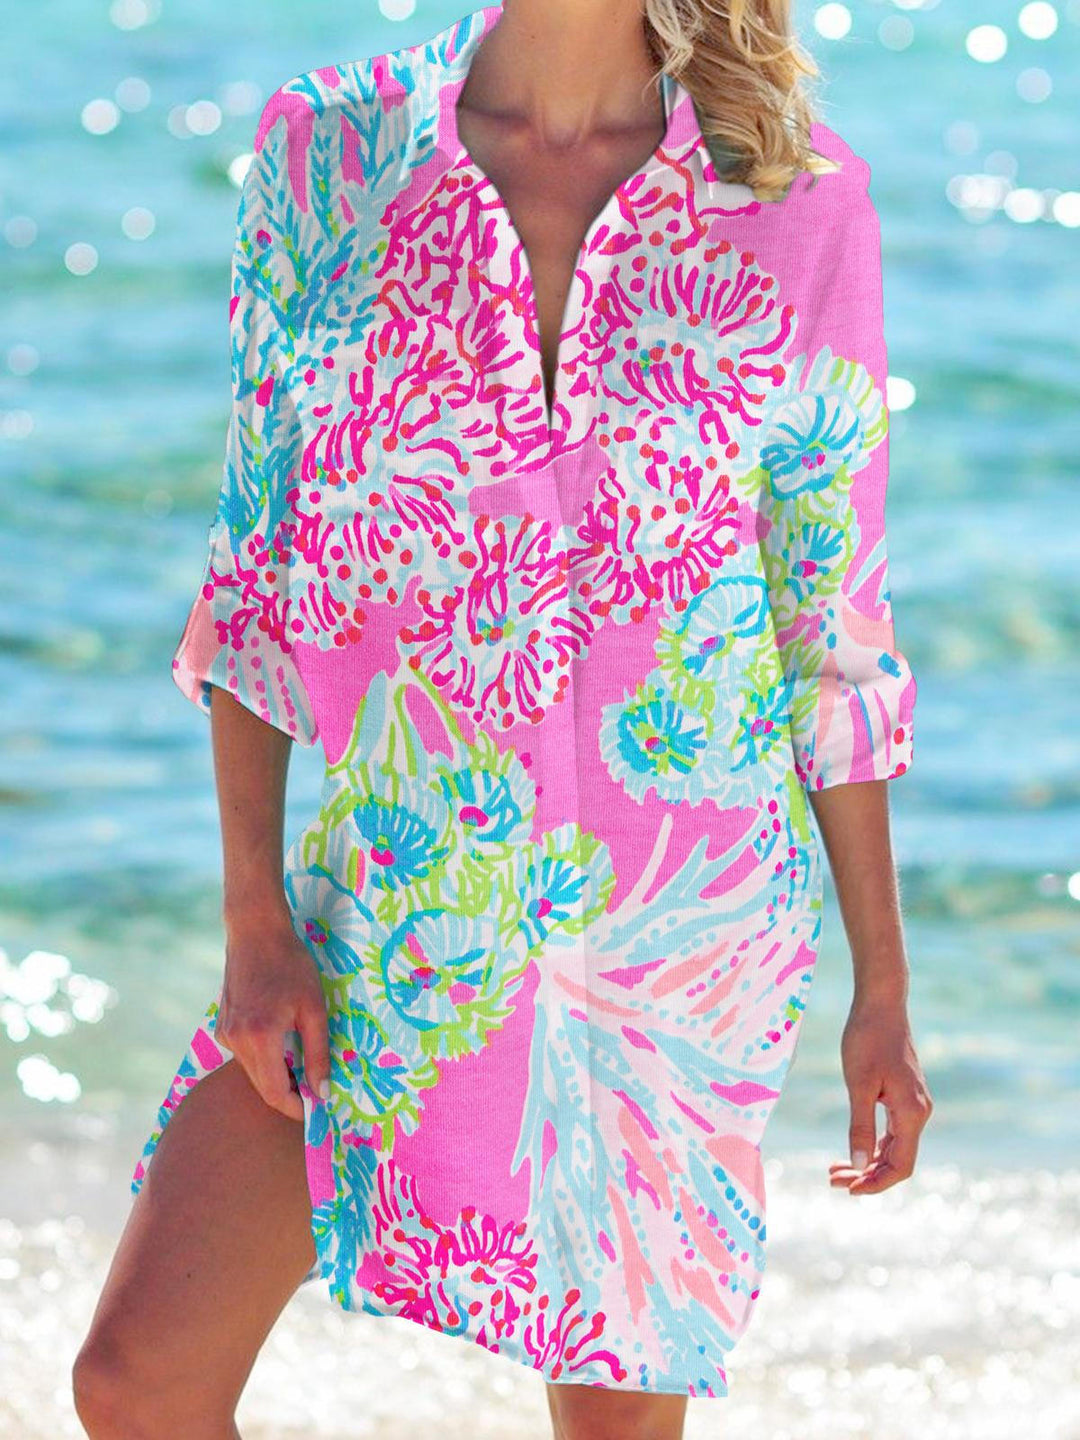 Women's Floral Print Long Sleeve Beach Shirt Dress